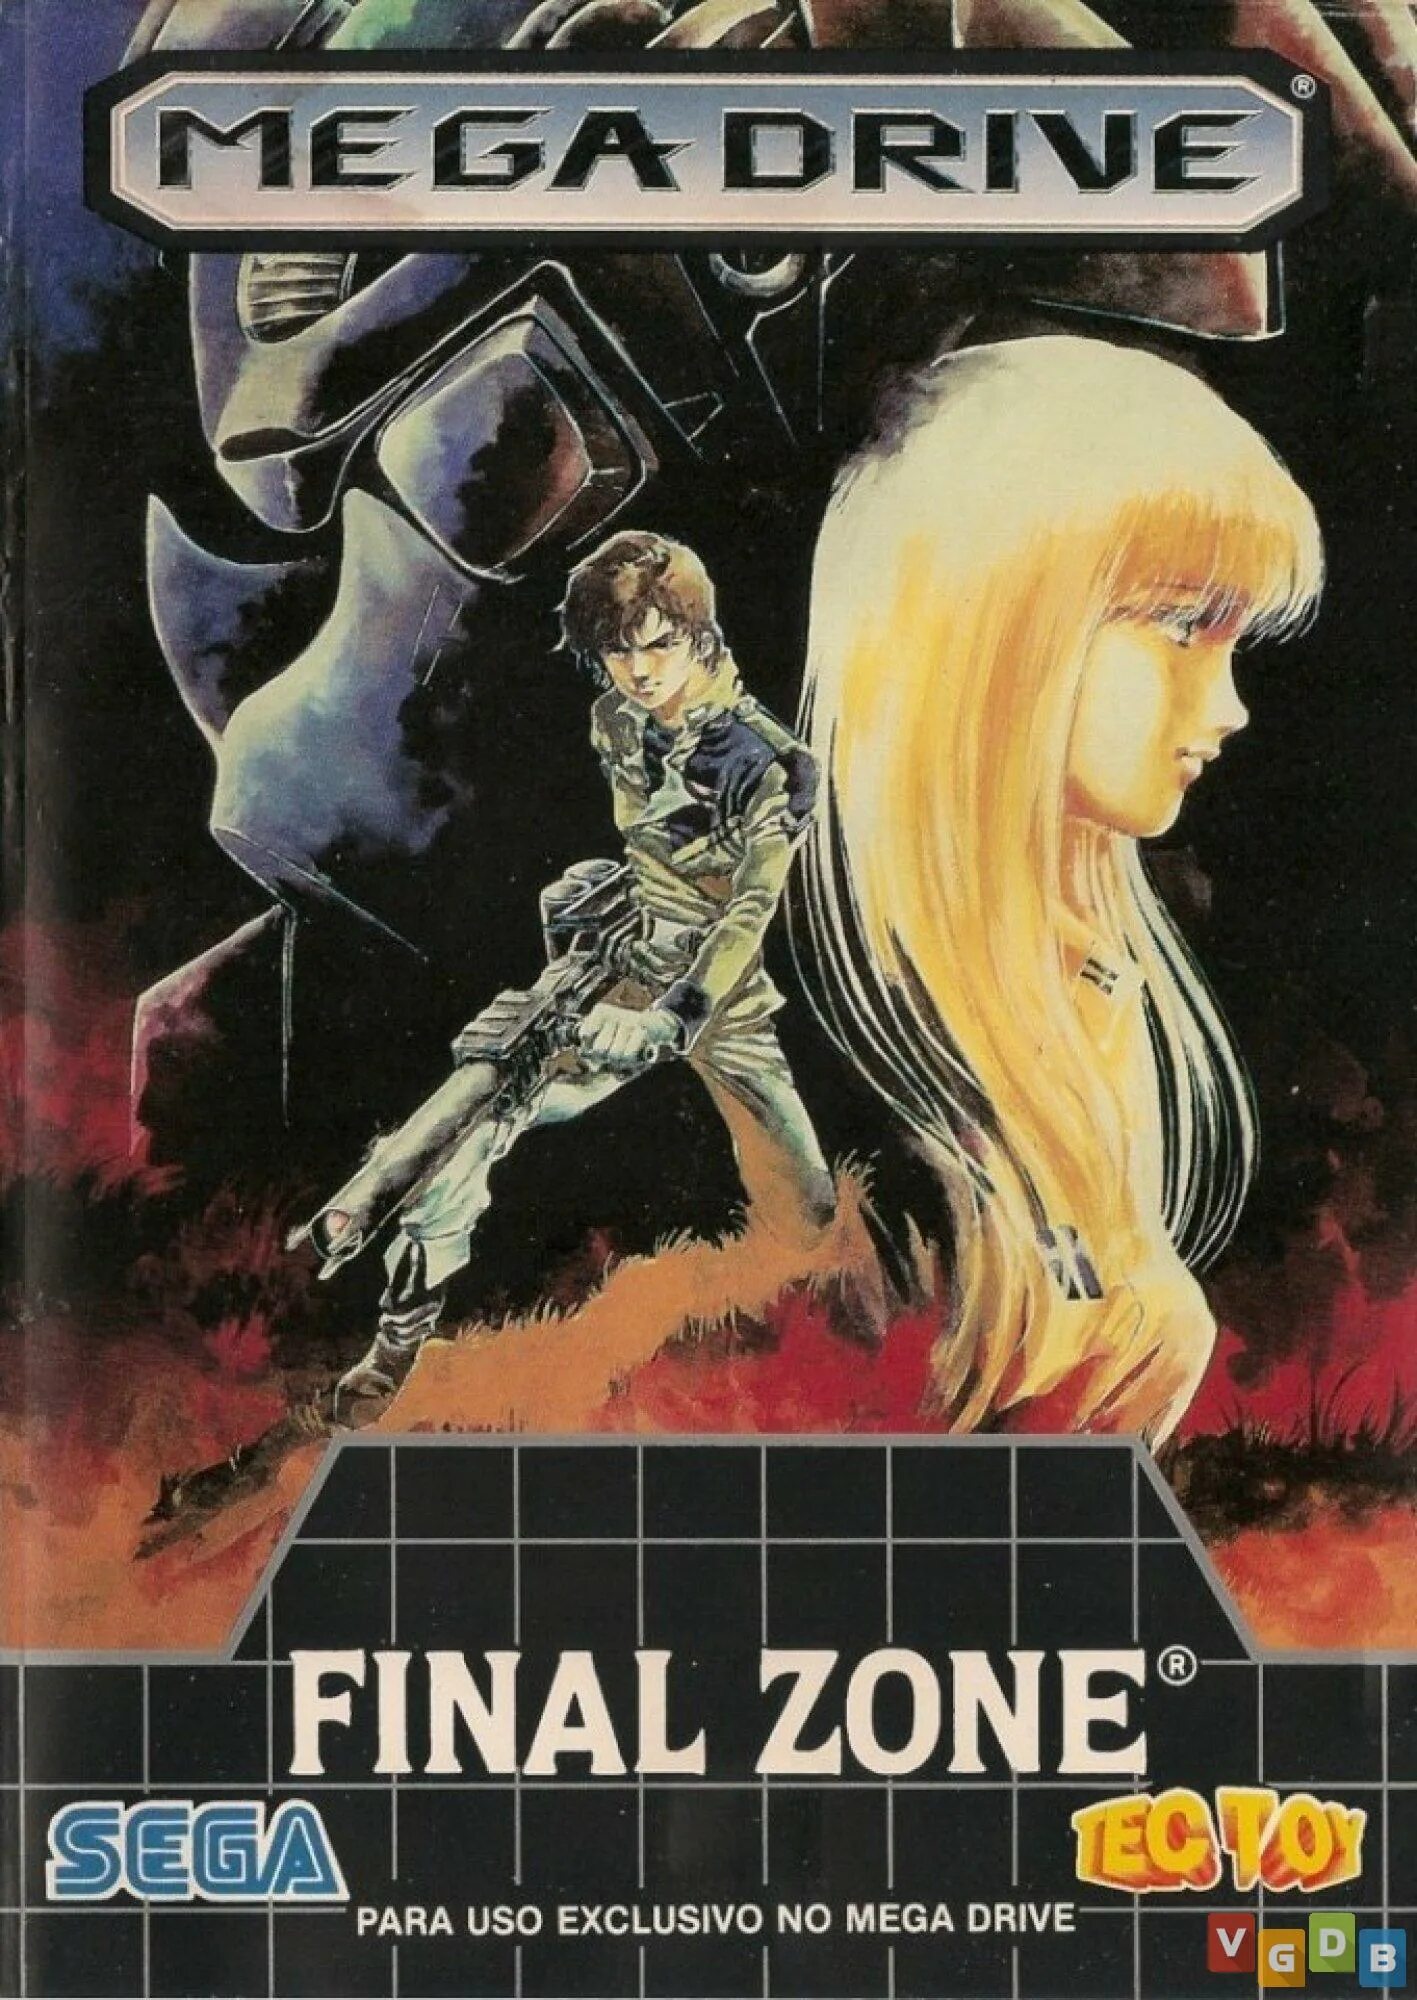 Final Zone. Final Zone Sega. Final Zone (Sega Megadrive). FZ Senki Axis _ Final Zone Sega. Final zone fnf